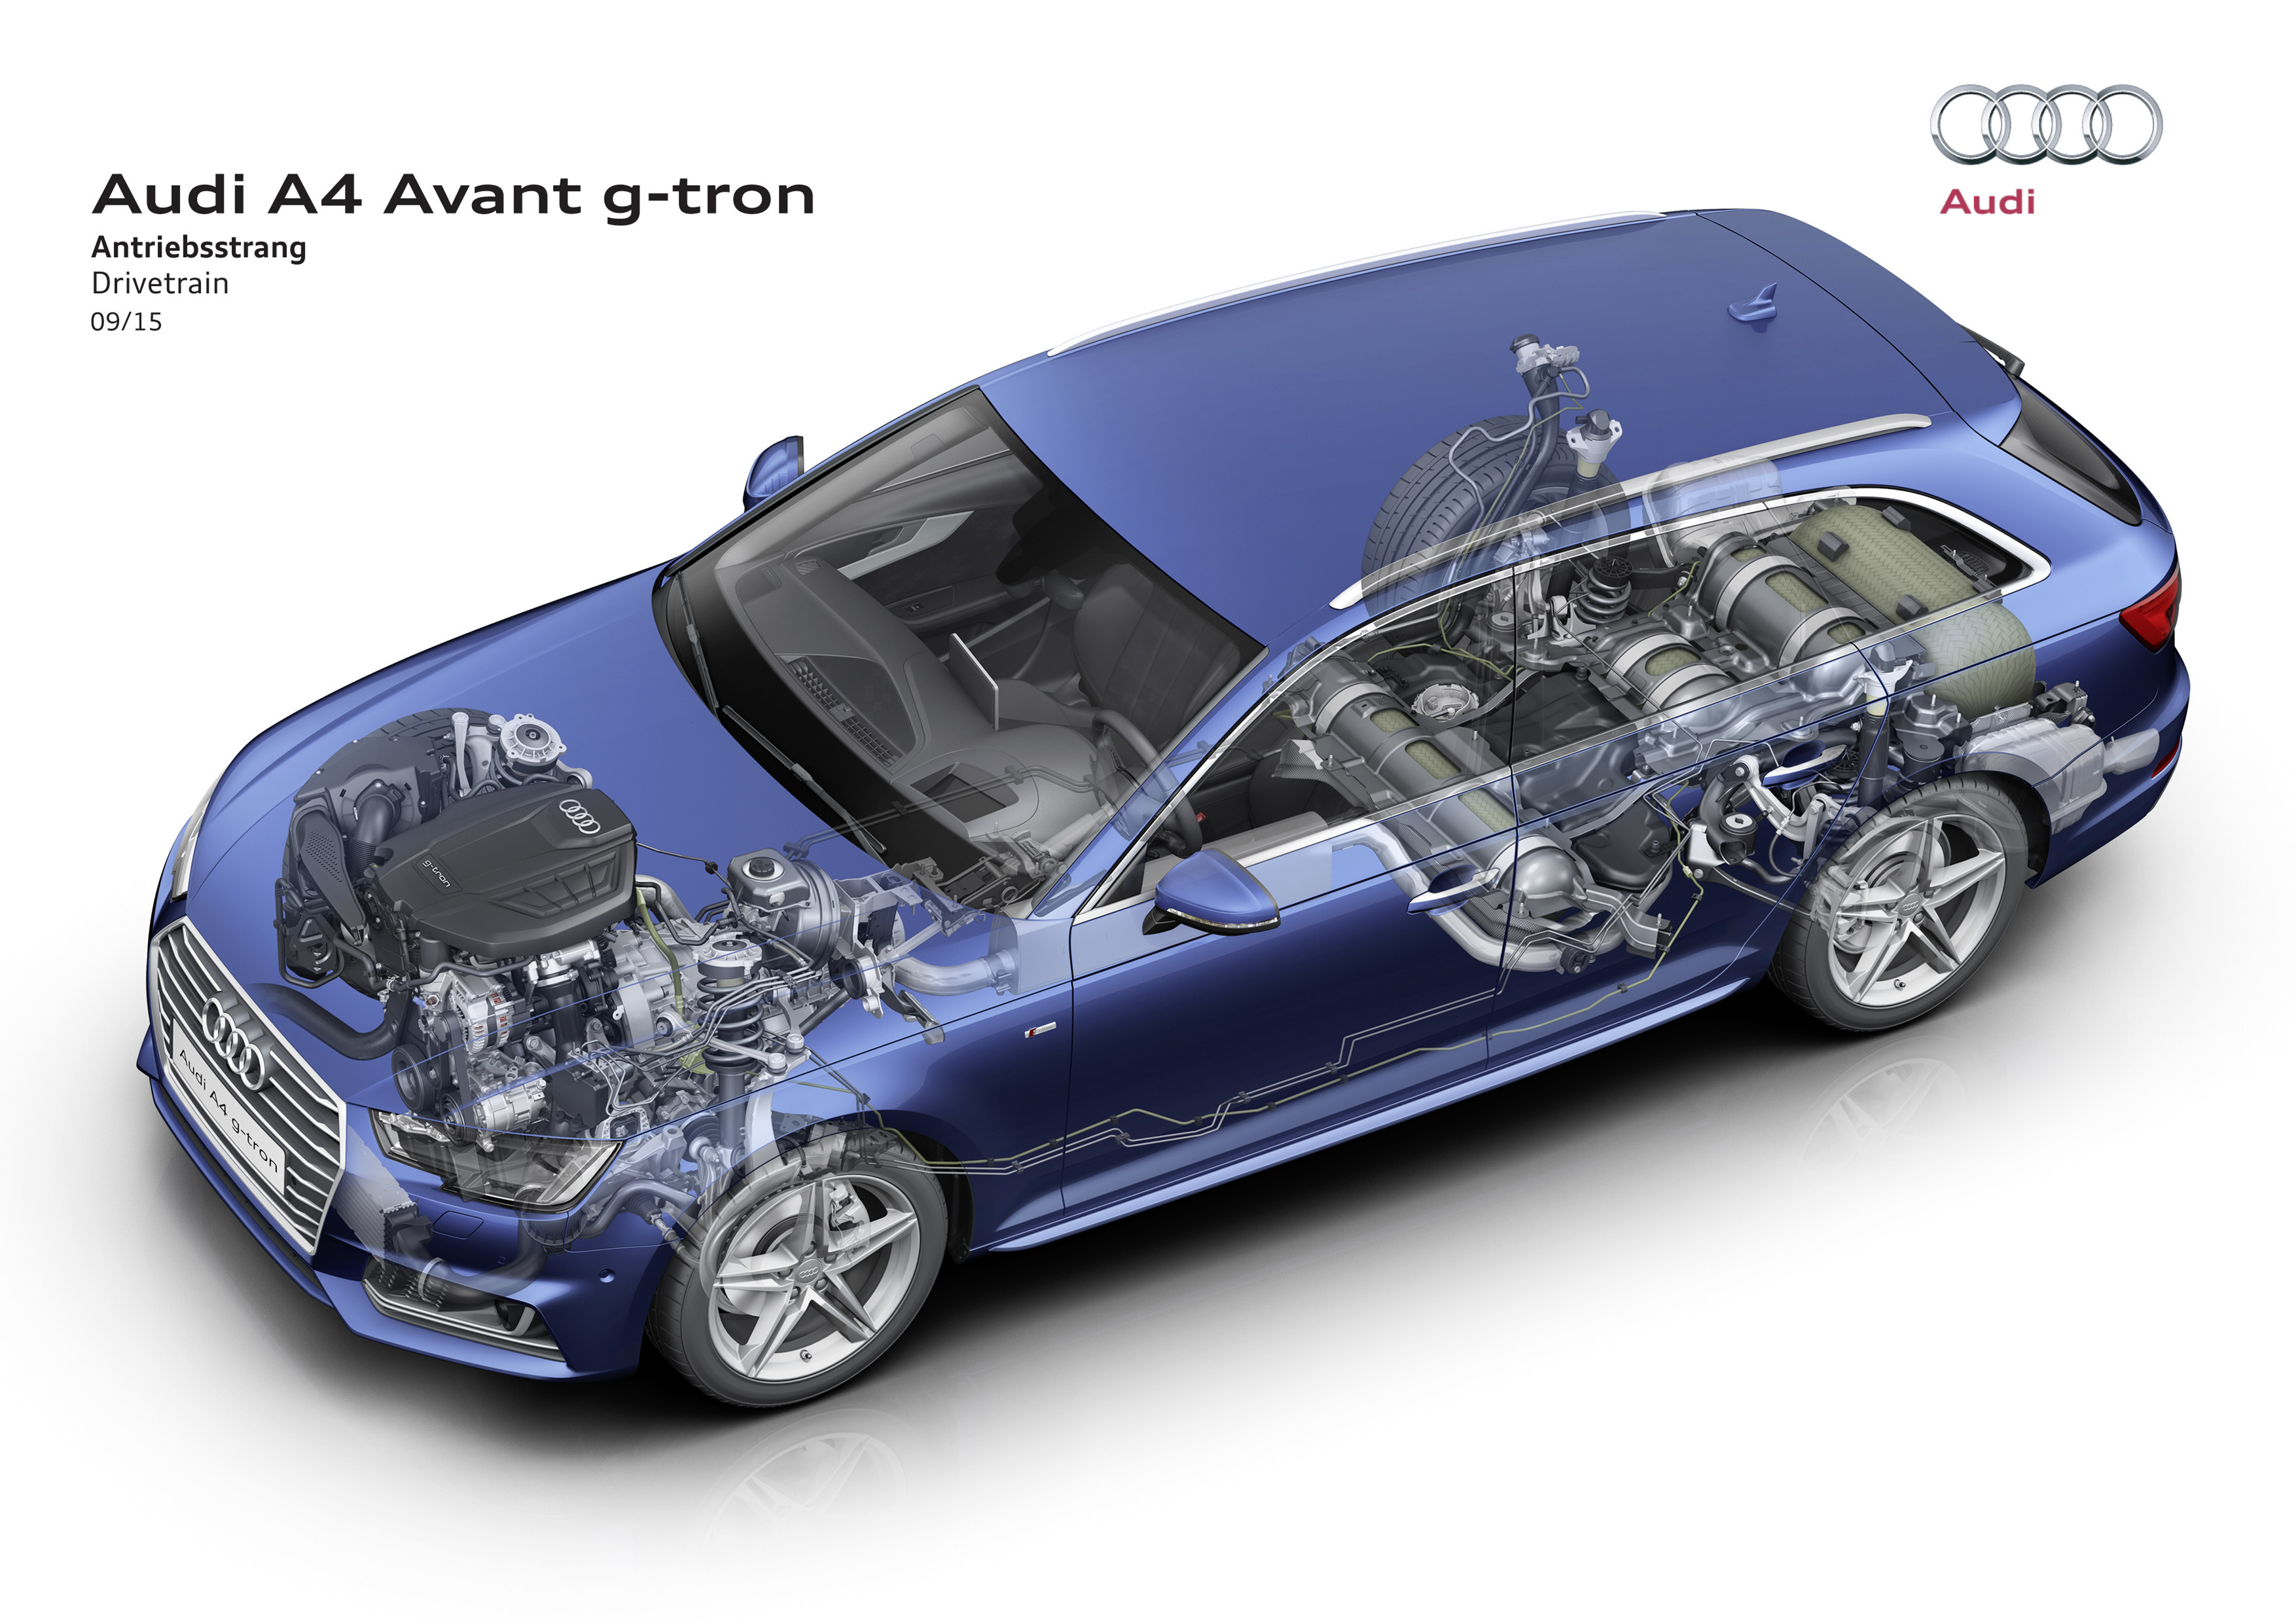 Audi A4 Avant g-tron reviews 2019